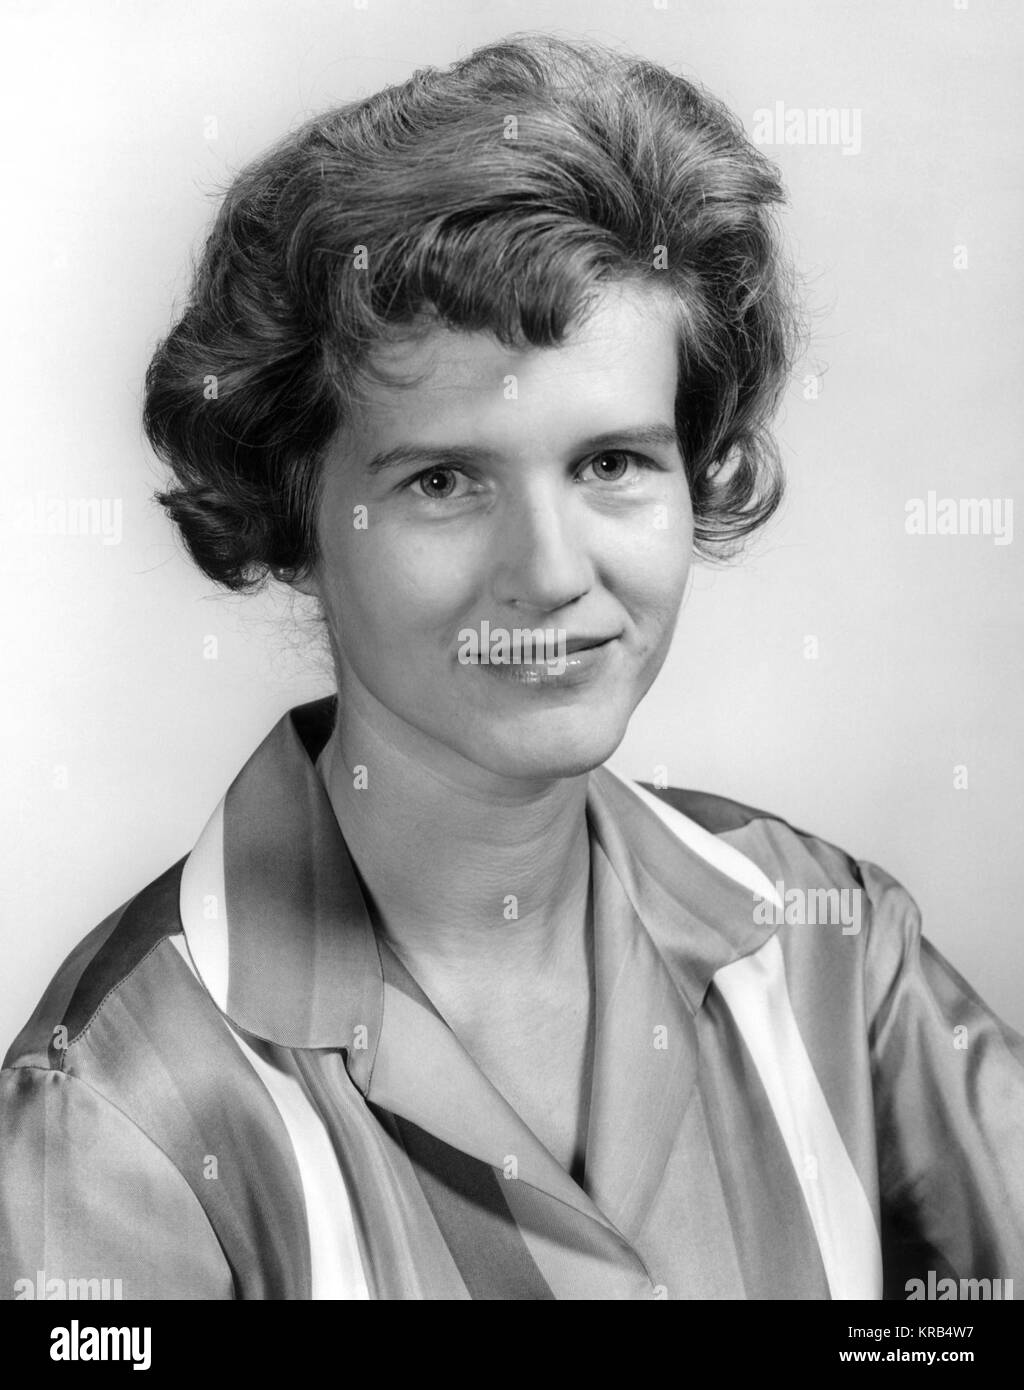 Questo è un ritratto di Maria von Braun, moglie del famoso MARSHALL SPACE flight director Wernher von Braun. Maria von Braun 6330121 modificati Foto Stock